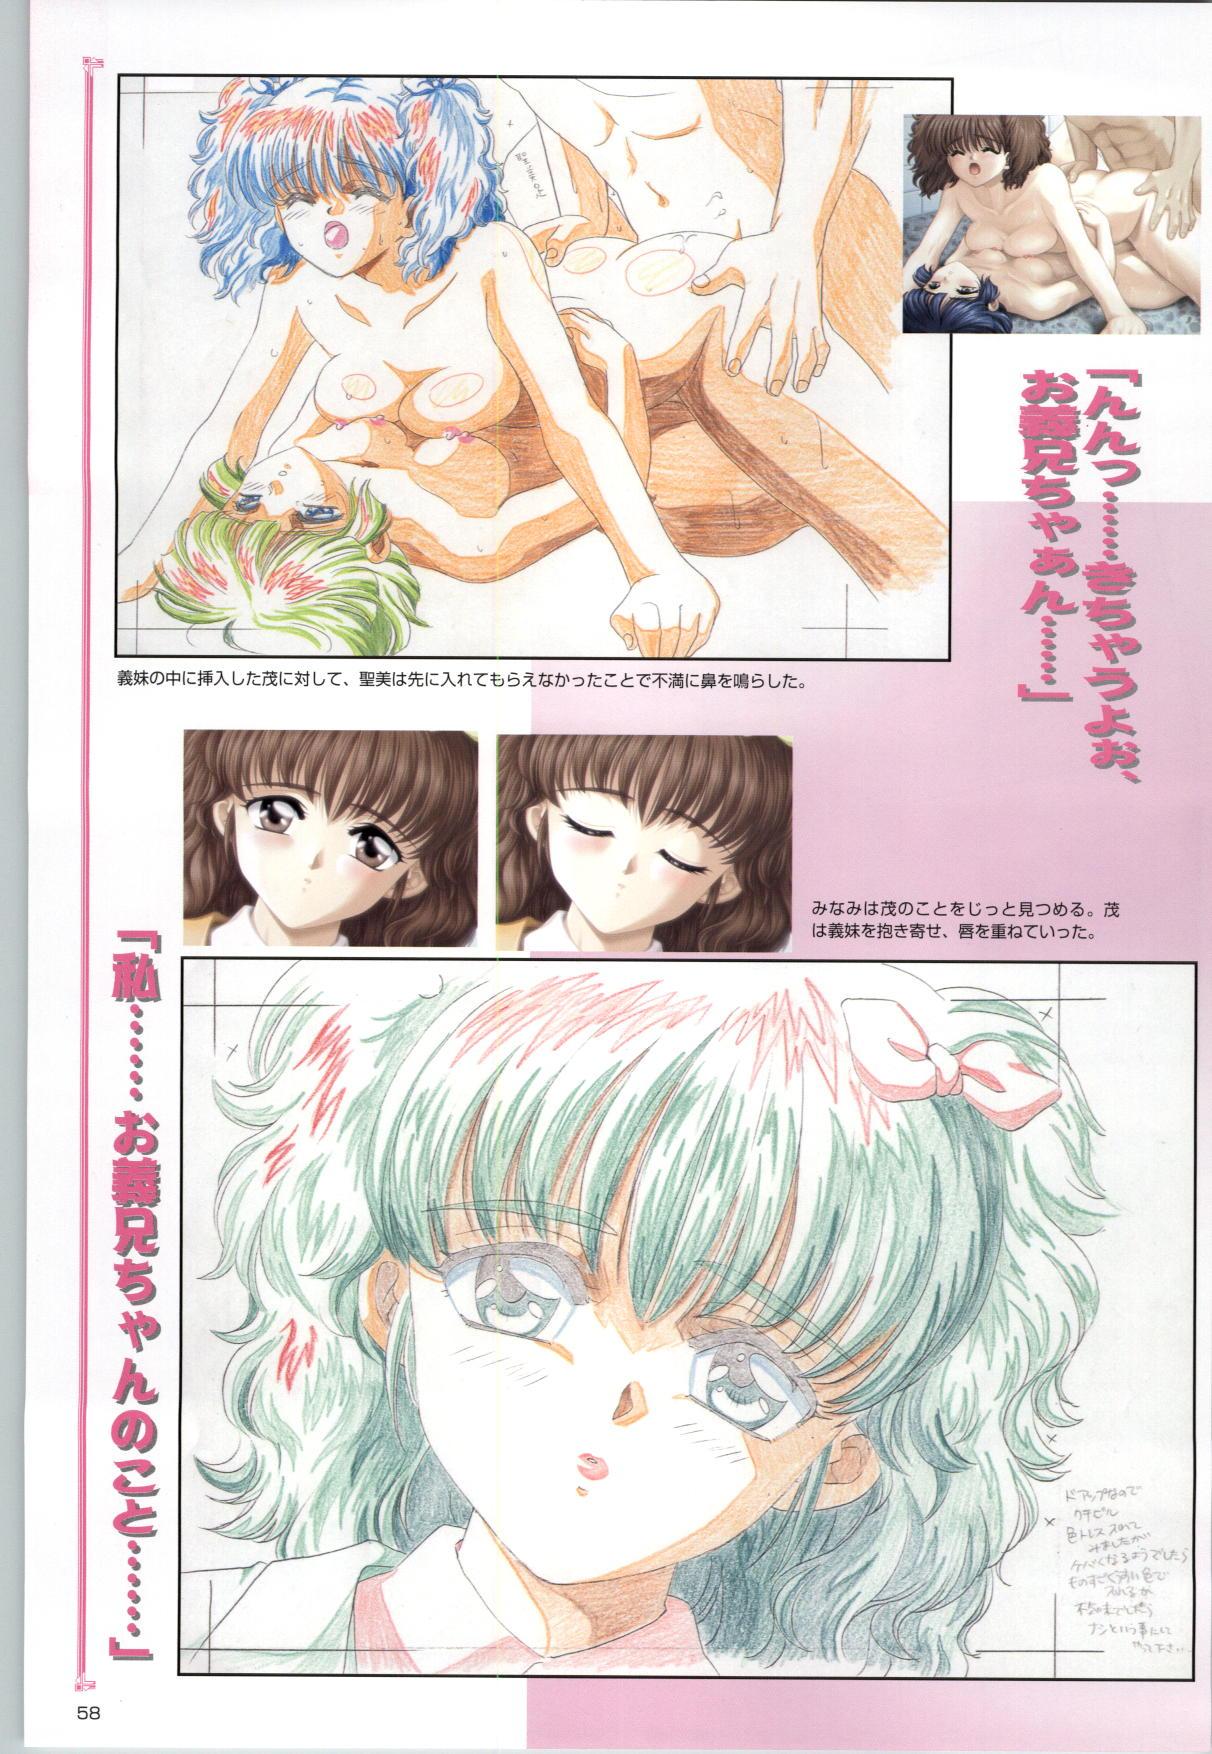 [Kinmedai Pink] ACTRESS Collection Kizuna + Seduce ~Yuuwaku~ + Hoshi no Pierce Computer Graphics & Original Pictures 58